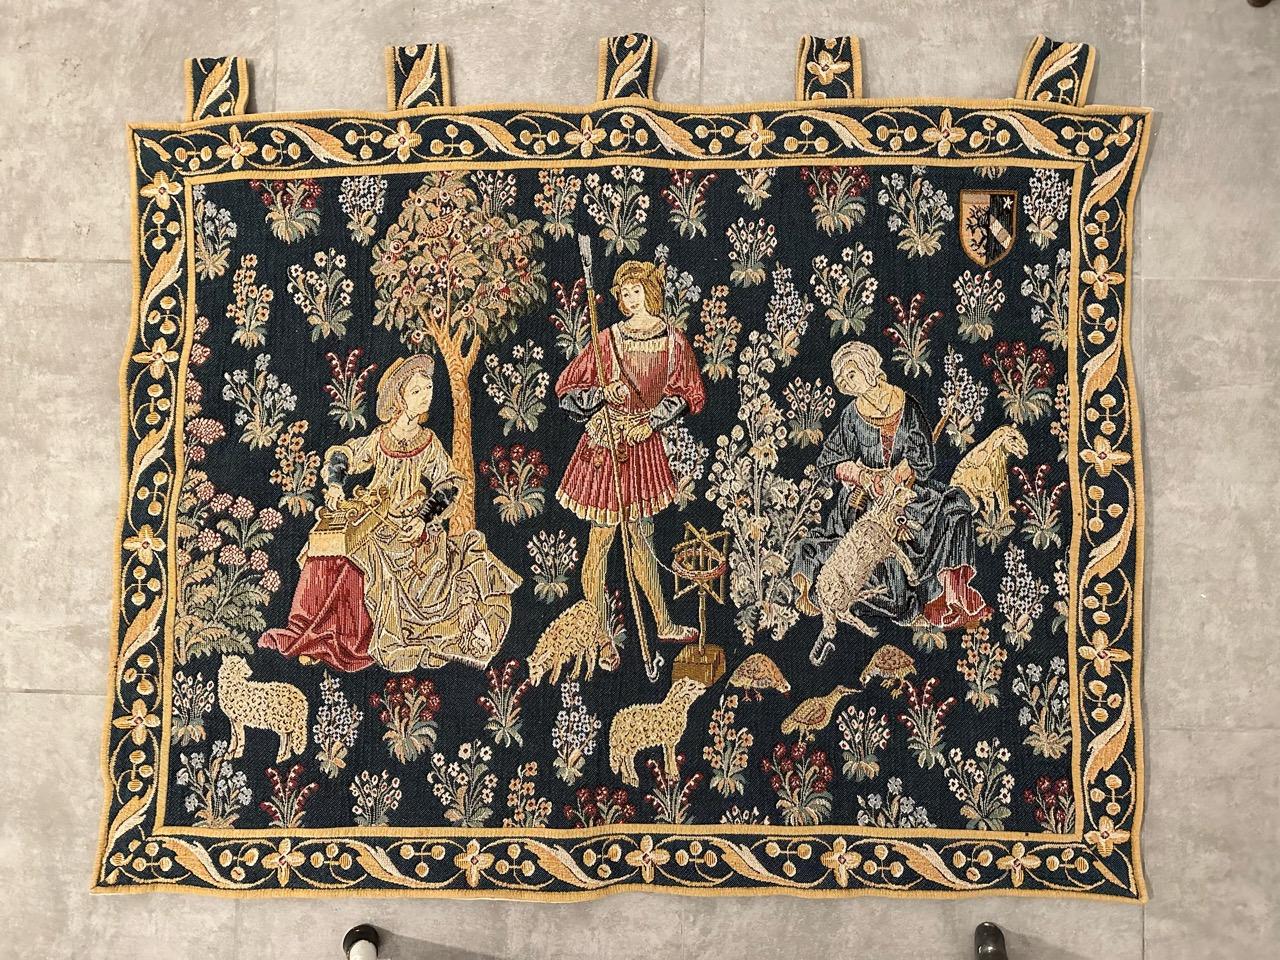 Sehr hübsch Mitte des Jahrhunderts Französisch Wandteppich mit schönen mittelalterlichen Design und schönen Farben, mechanische Jaquar Fertigung mit Wolle und Baumwolle gewebt.

✨✨✨
